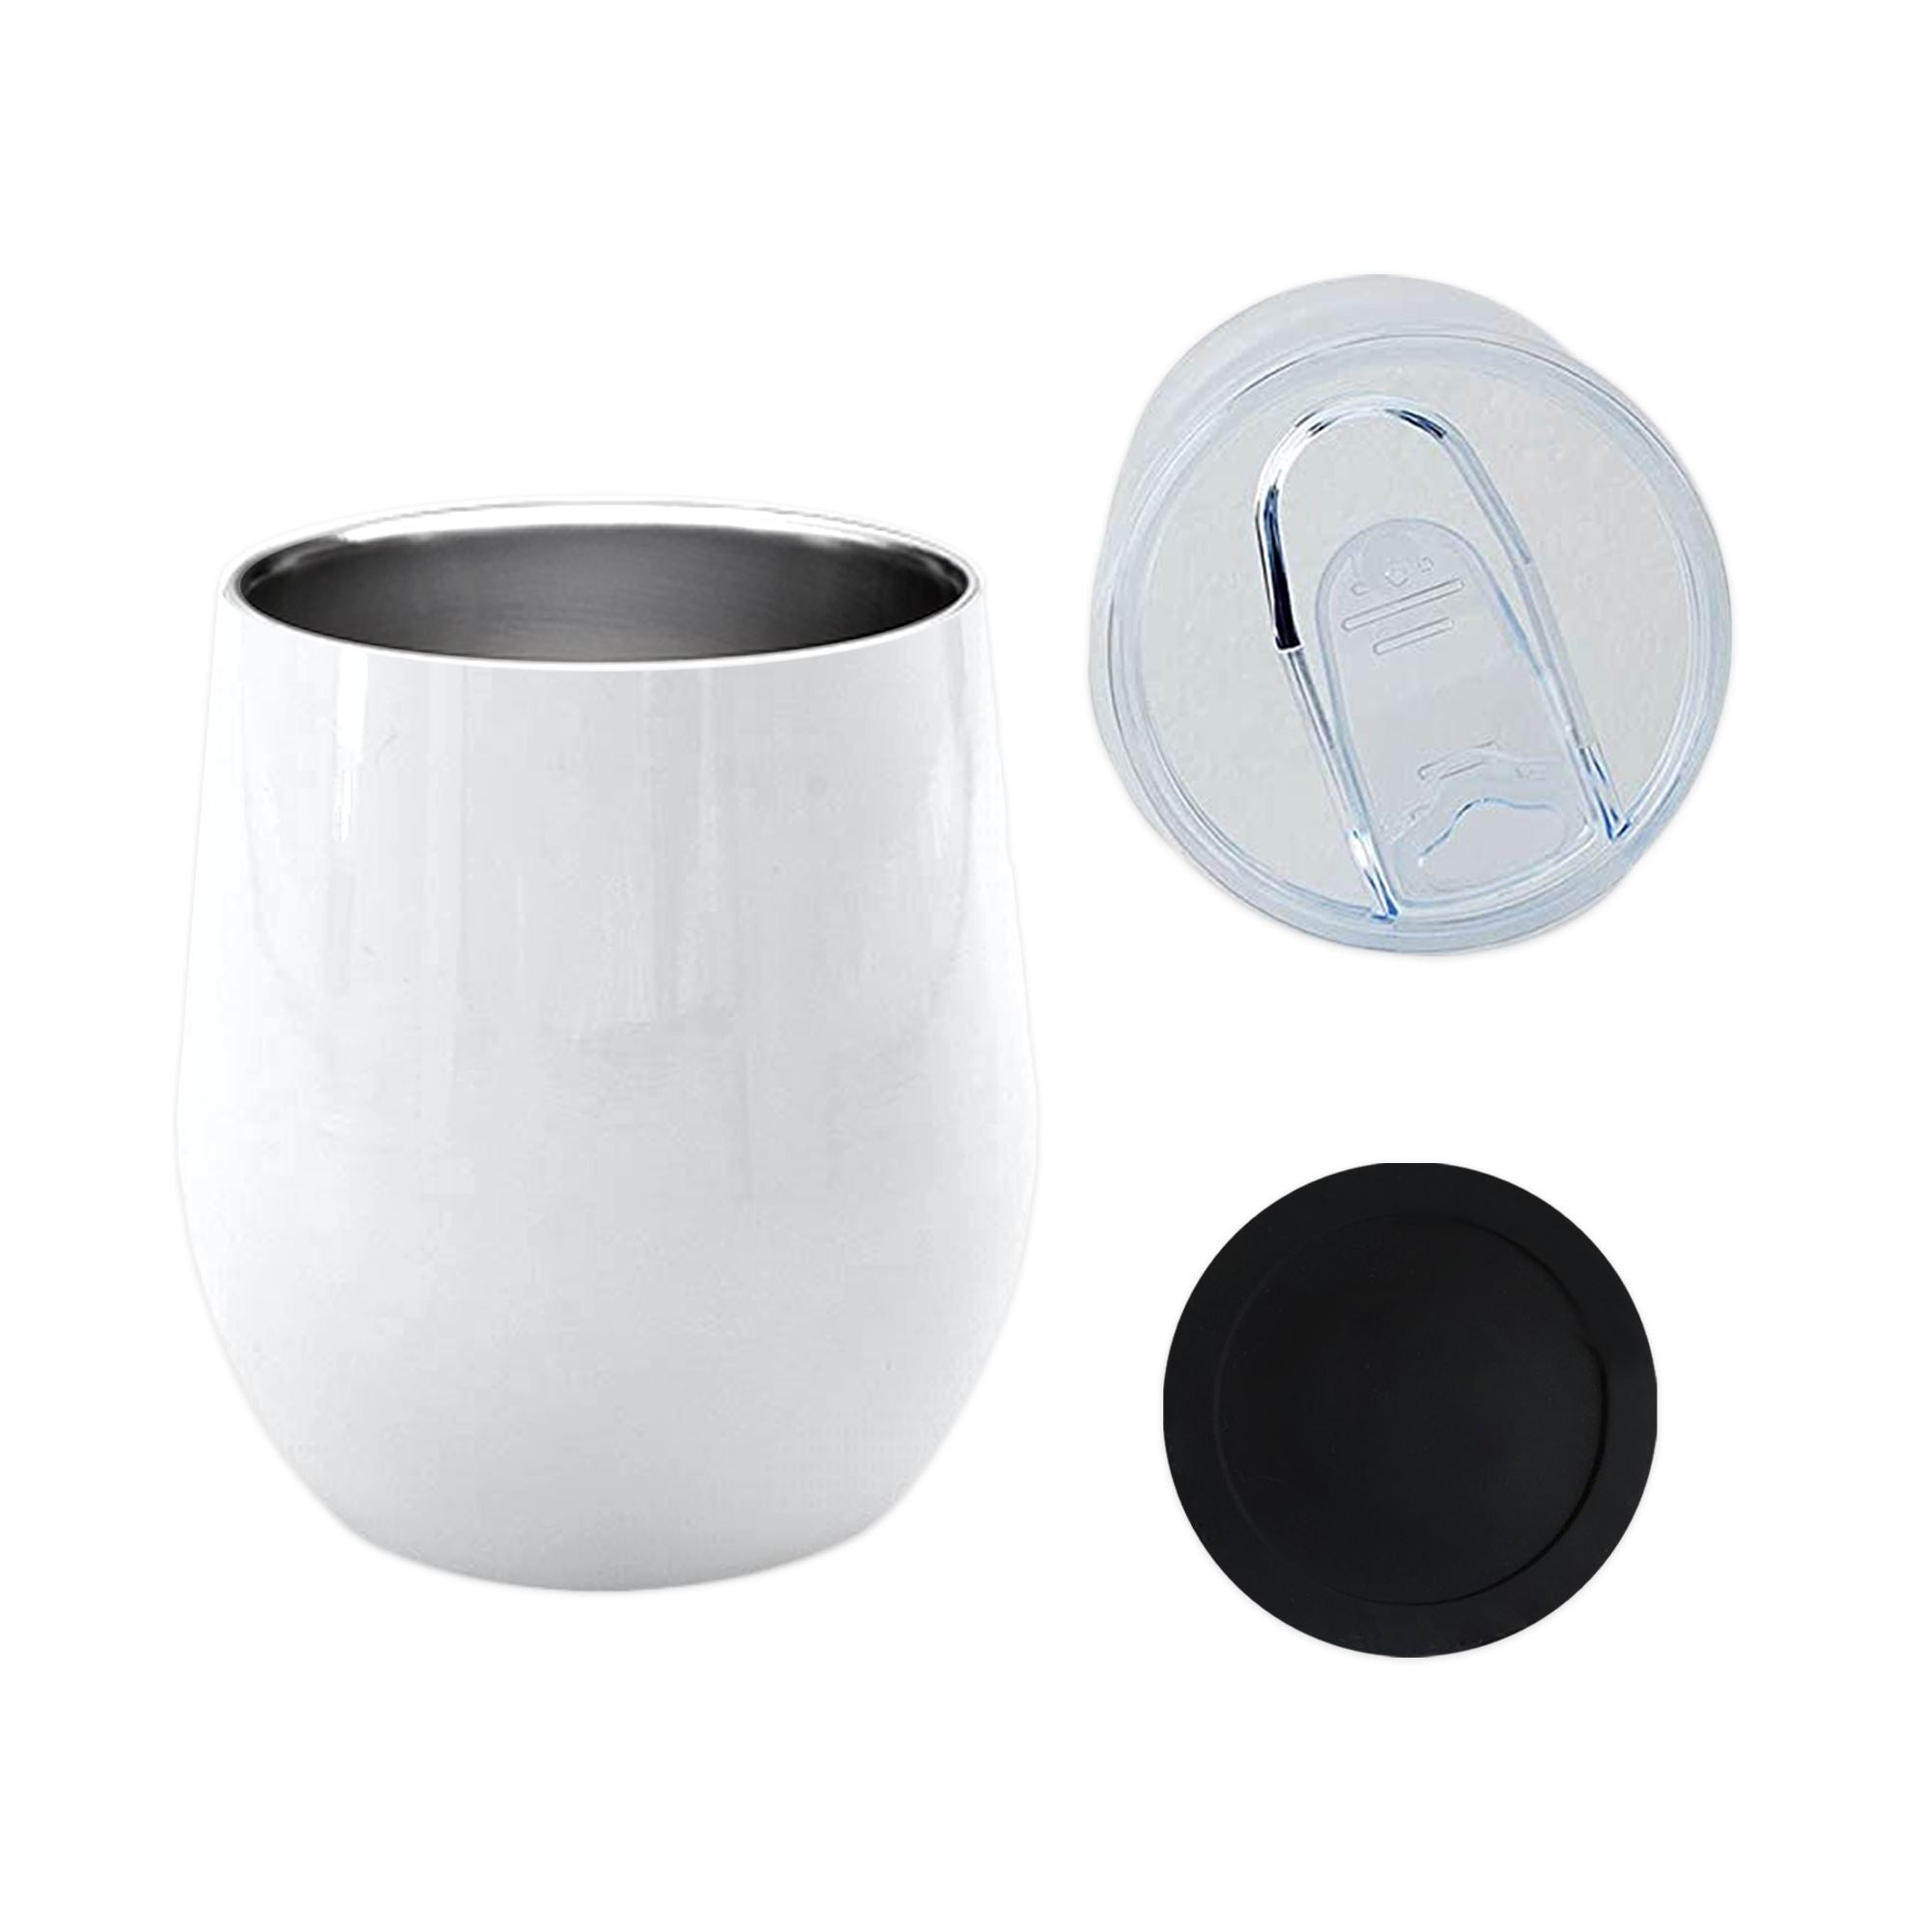 Custom Wine Tumbler — White Confetti Box